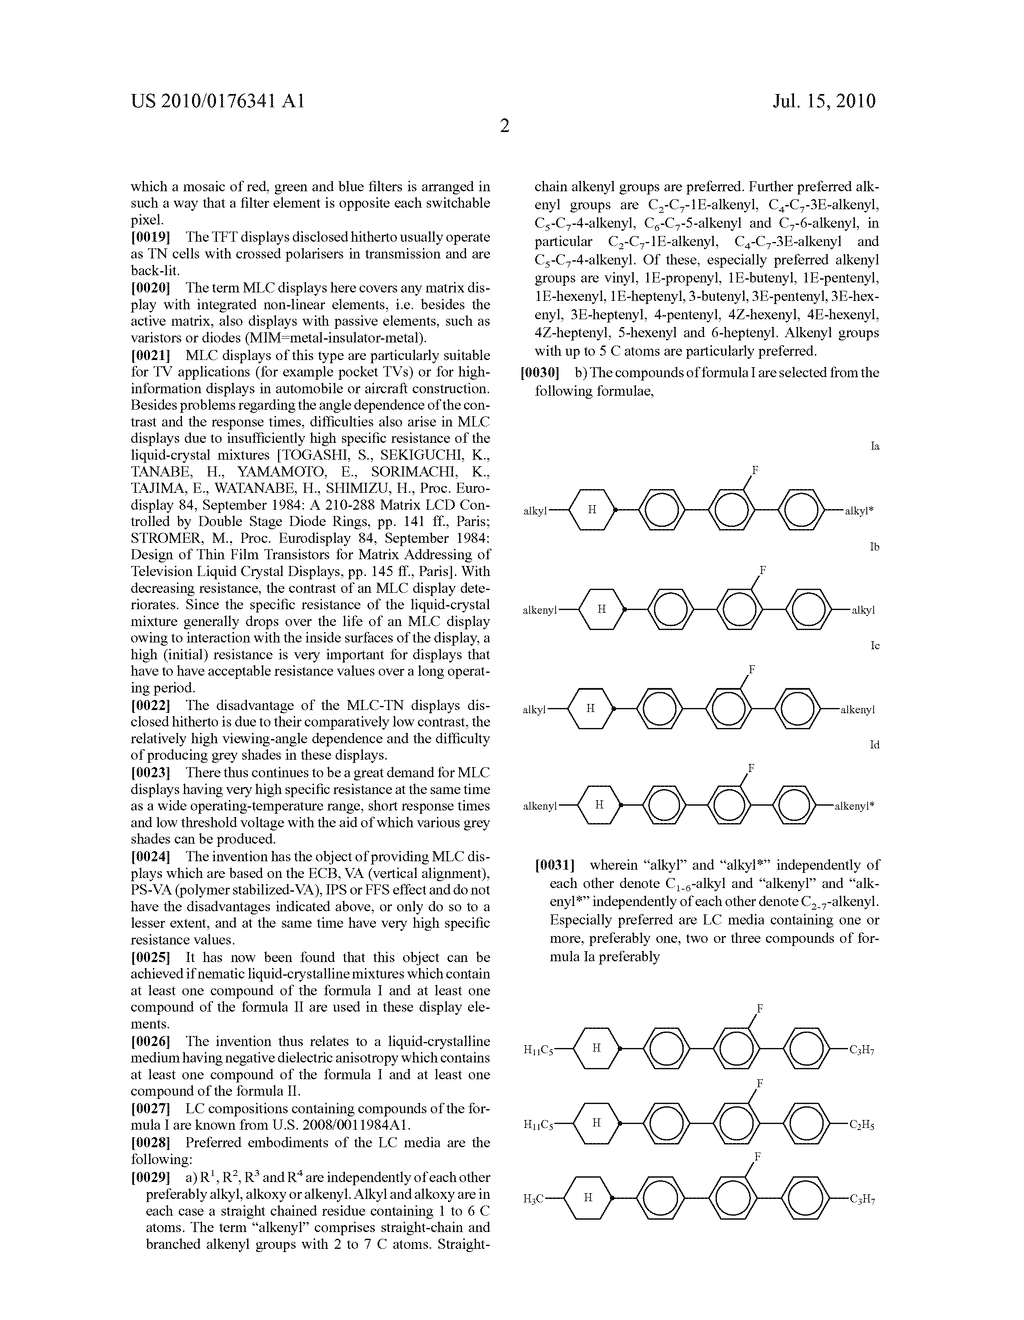 LIQUID CRYSTALLINE MEDIUM - diagram, schematic, and image 03